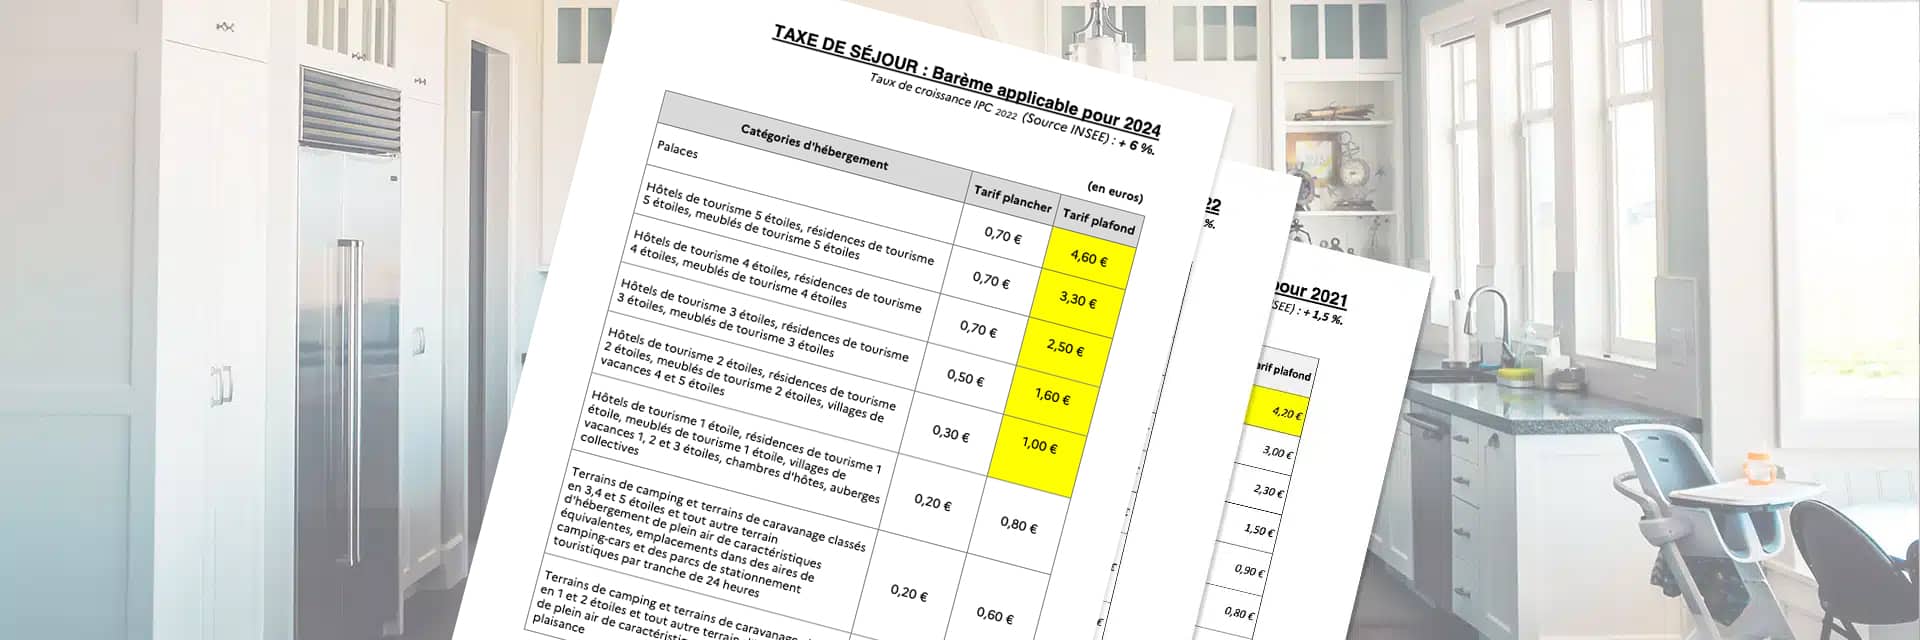 Bareme-des-tarifs-de-Taxe-de-sejour-applicables-pour-2024